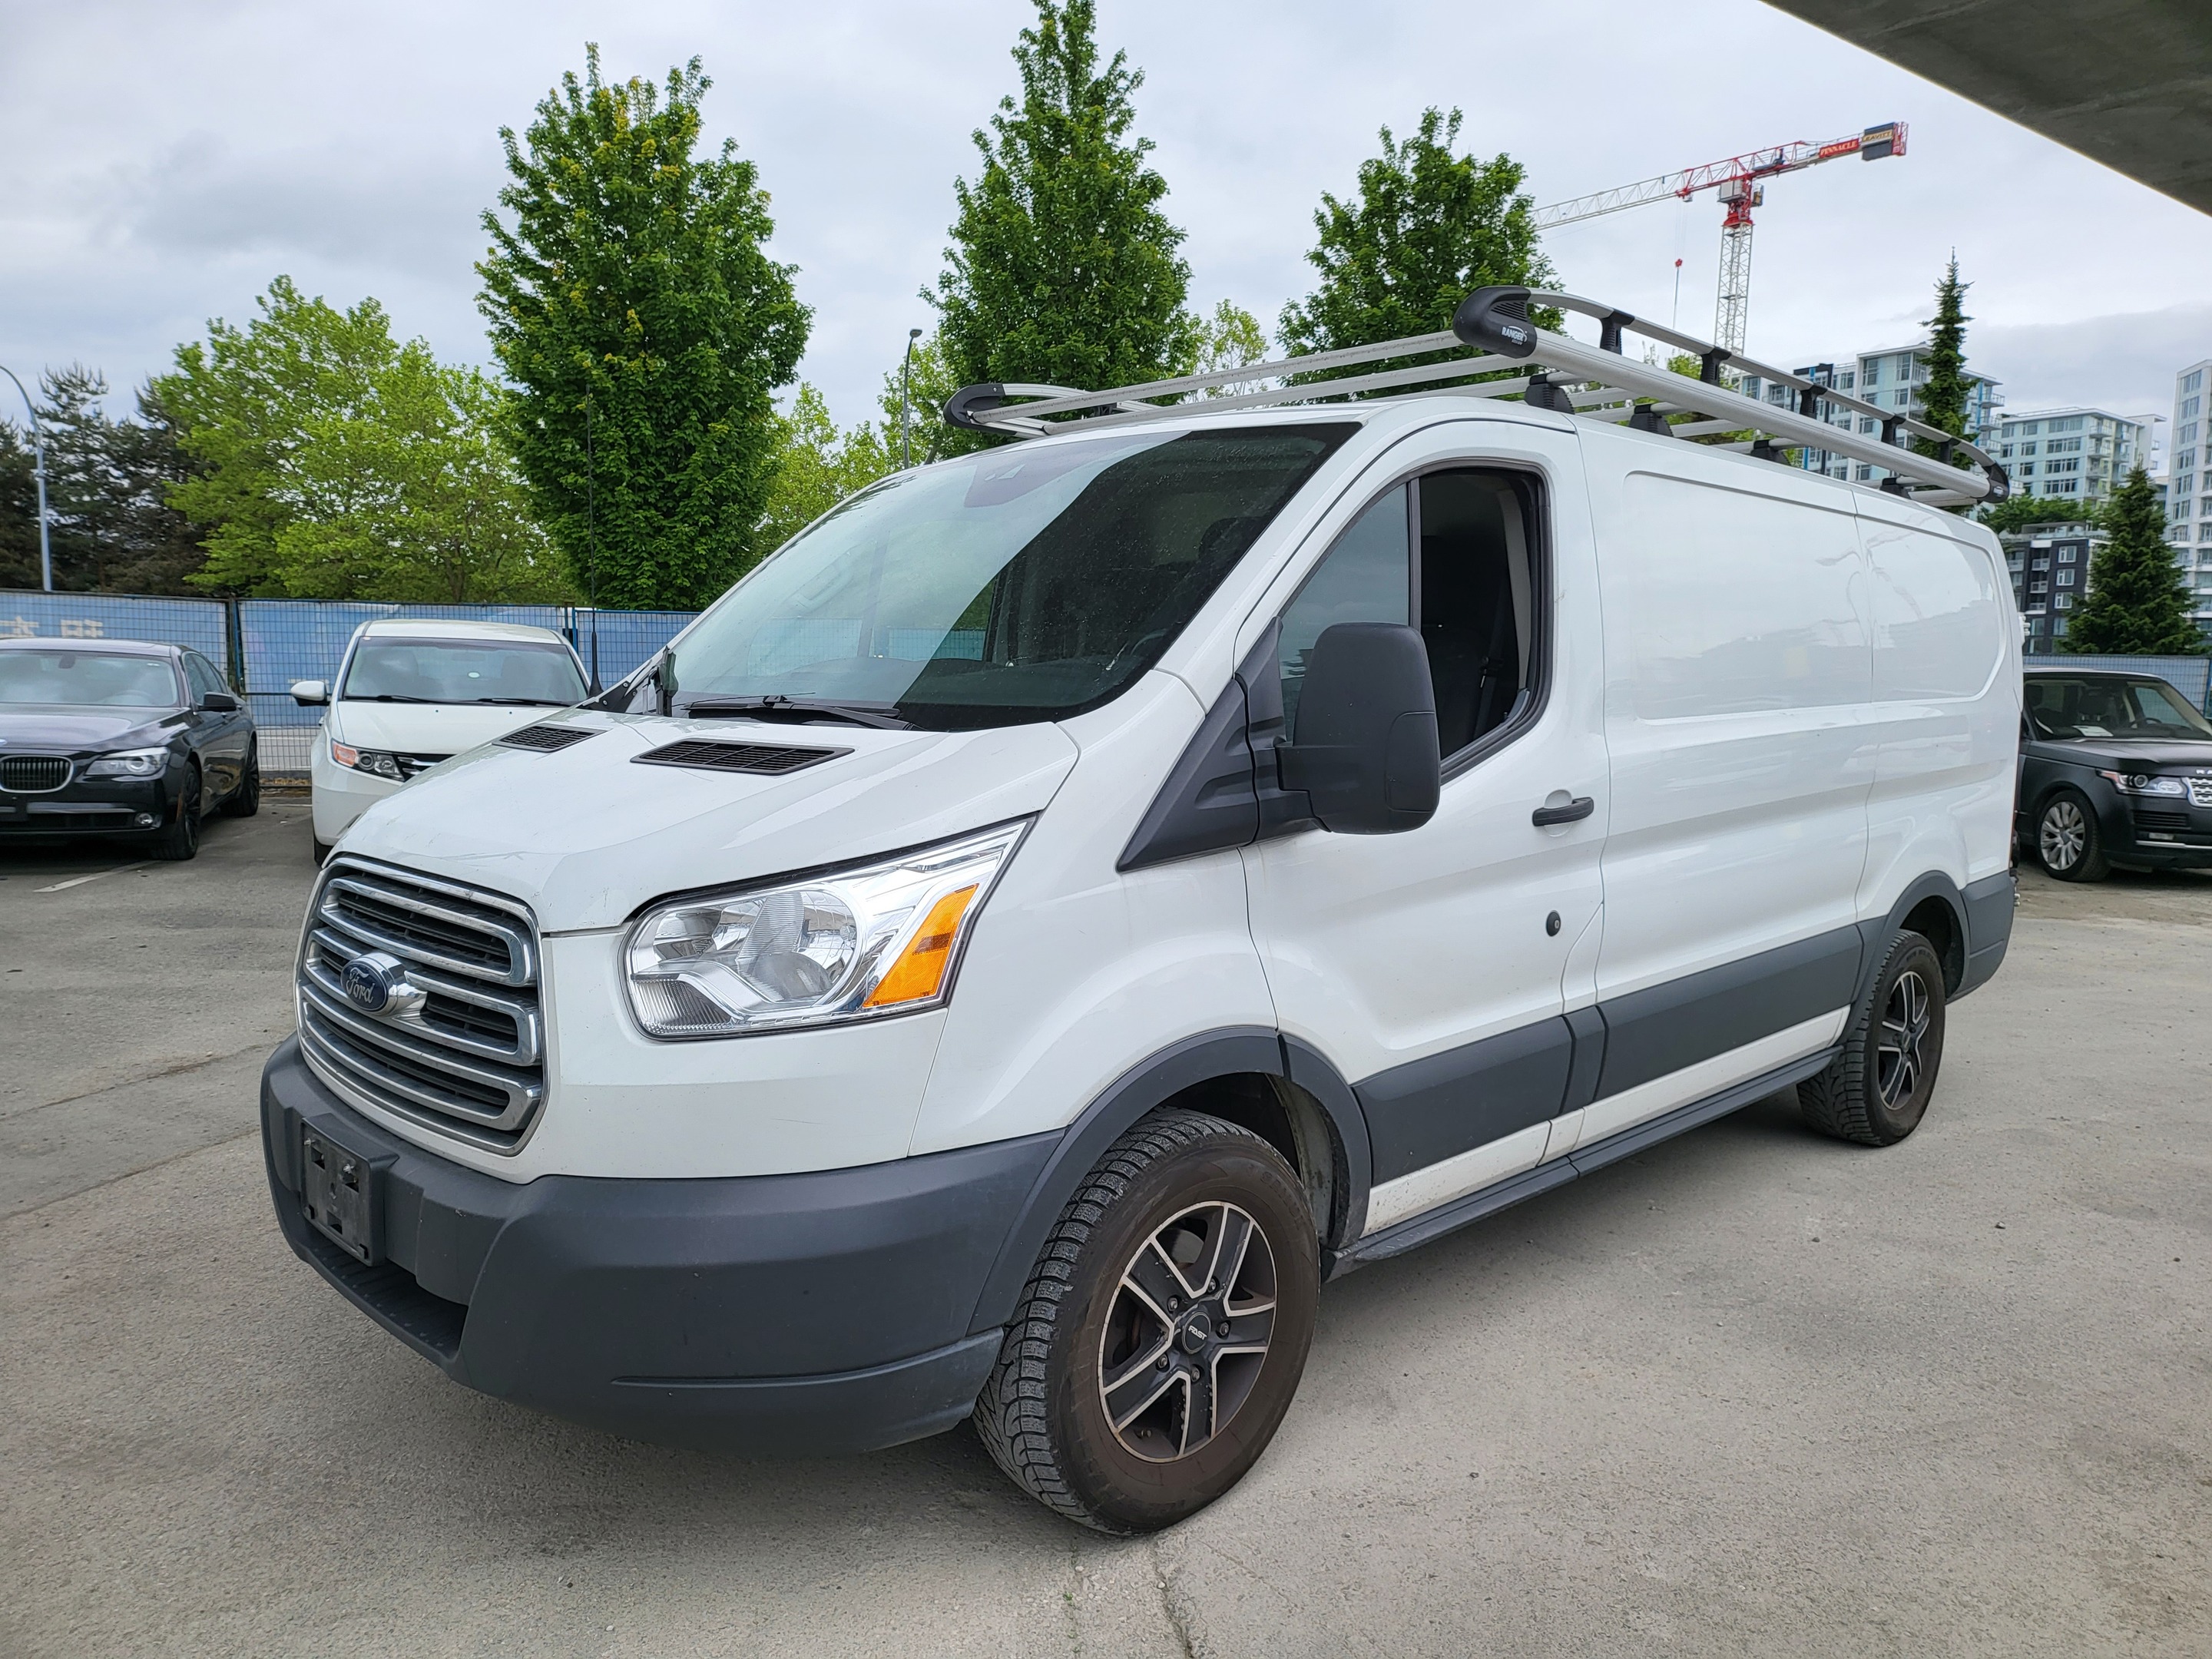 2018 Ford Transit Van 604-644-9328